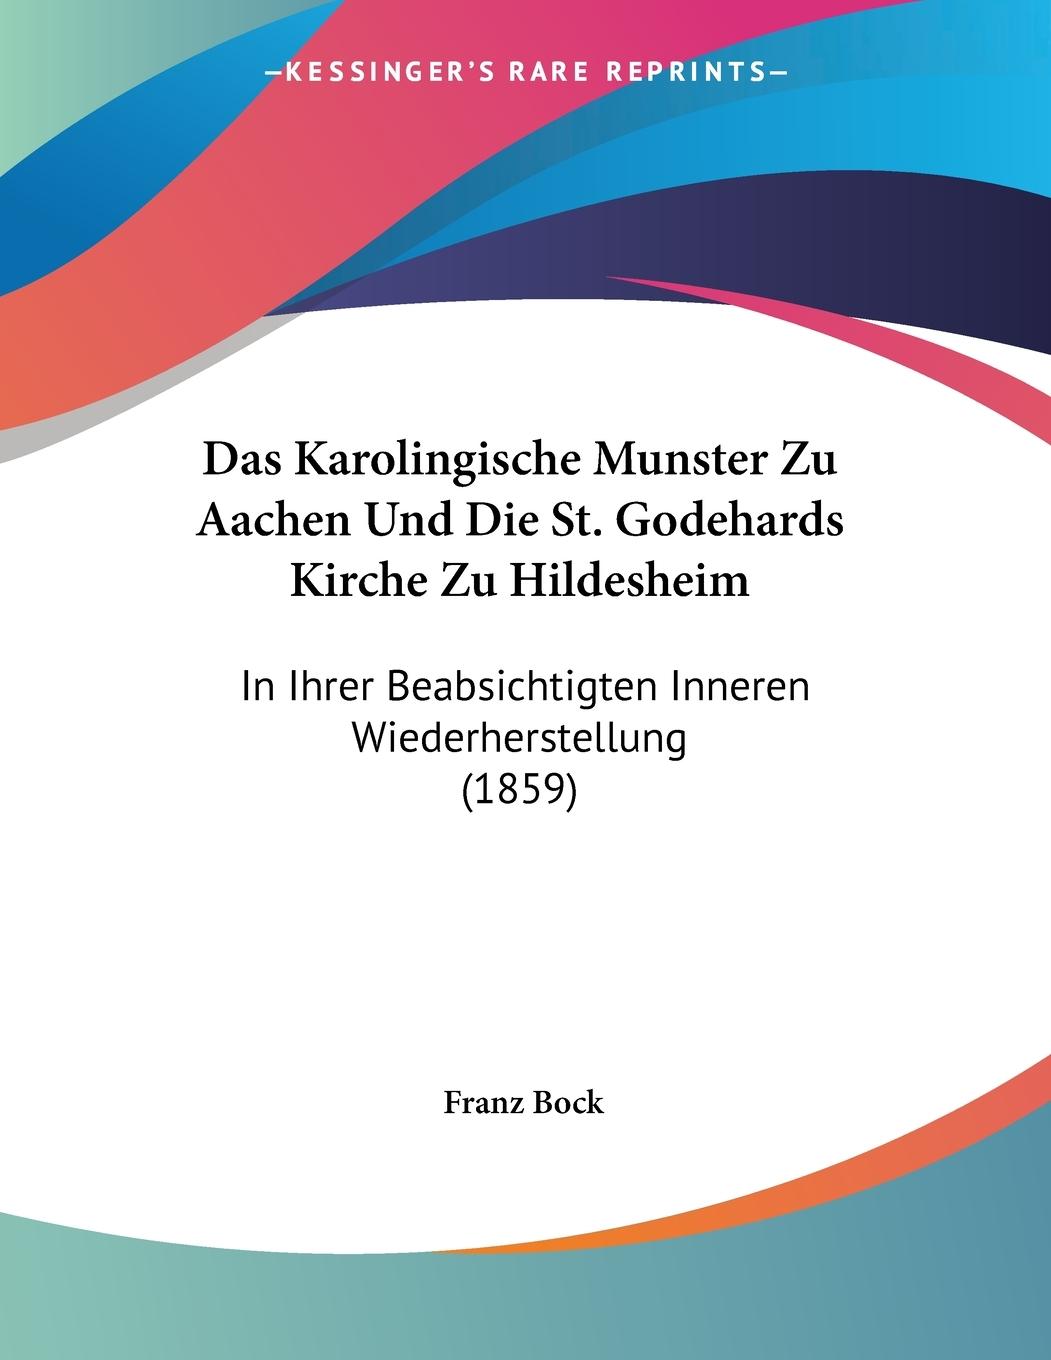 Das Karolingische Munster Zu Aachen Und Die St. Godehards Kirche Zu Hildesheim - Bock, Franz